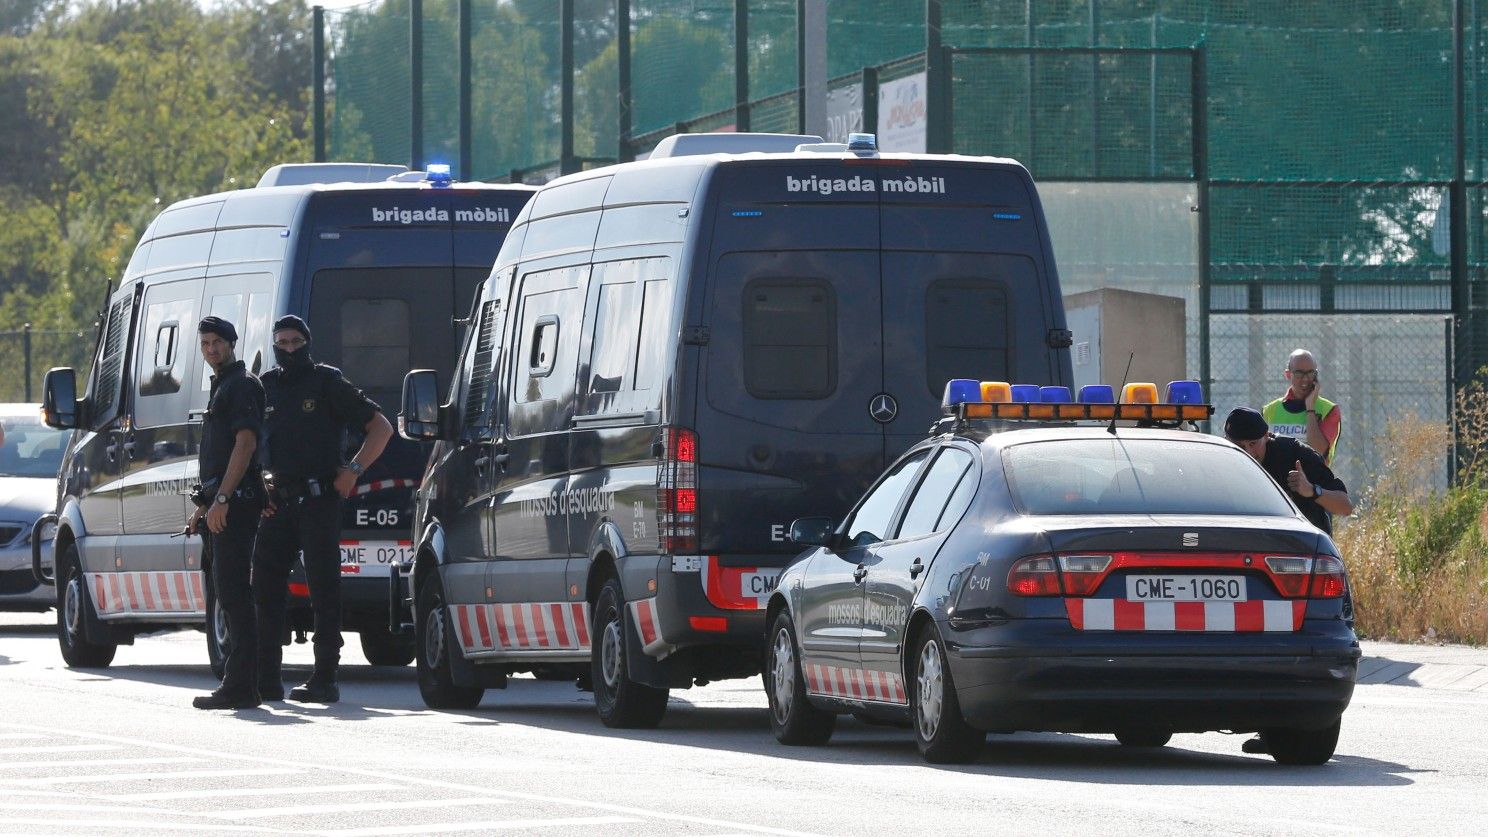 Control de los Mossos en la carretera C-243b de Sant Sadurní a Gelida, en el kilómetro 16,4, en agosto de 2017, tras los atentados terroristas de Barcelona y Cambrils del 17 de agosto.